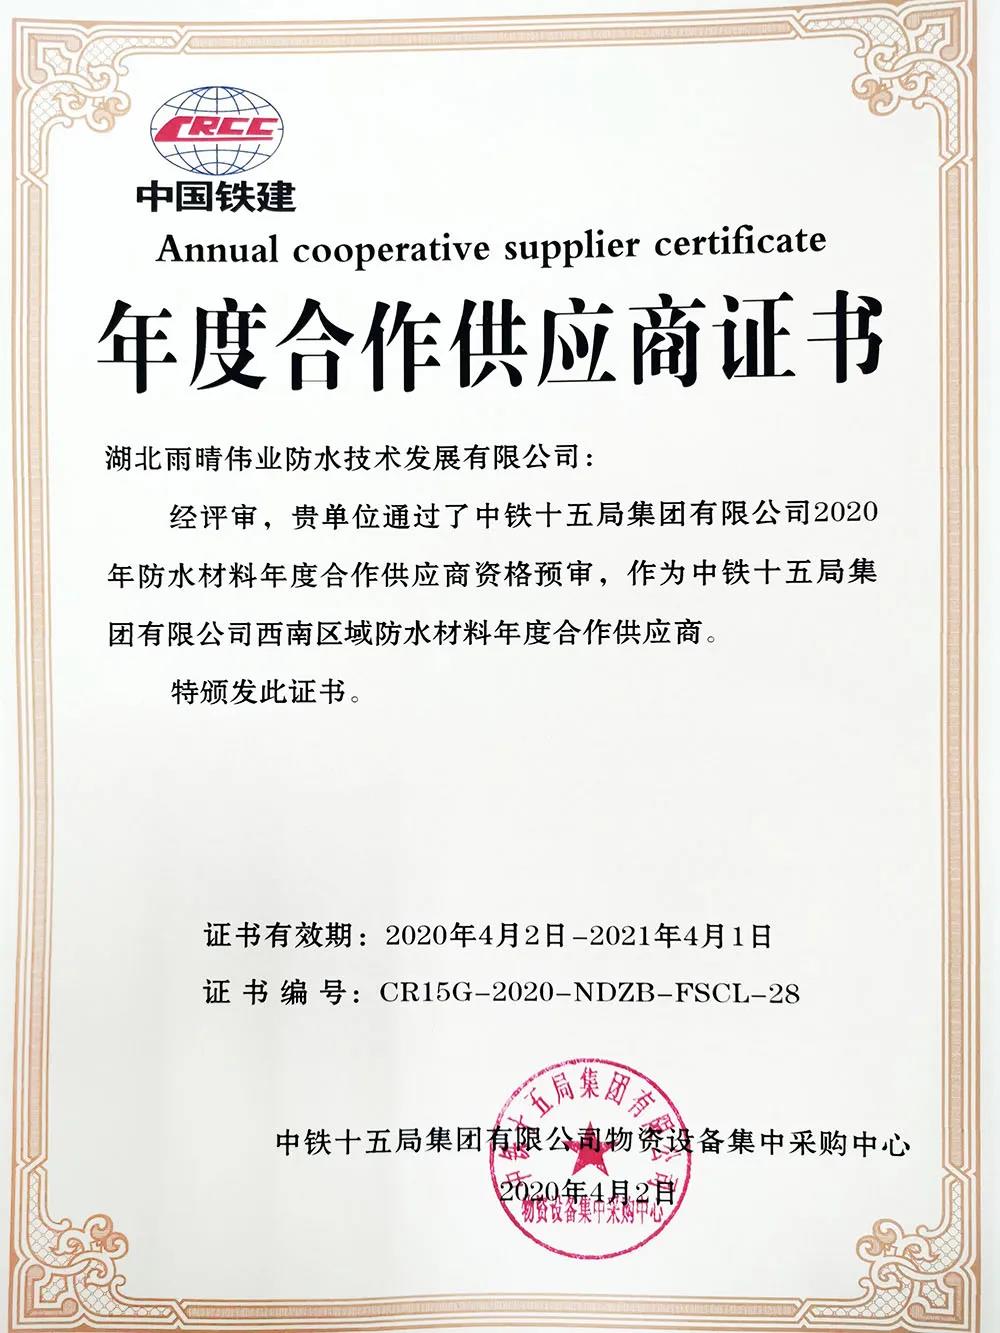 喜讯：双色球伟业公司获得中铁十五局集团2020年年度合作供应商资格！！！